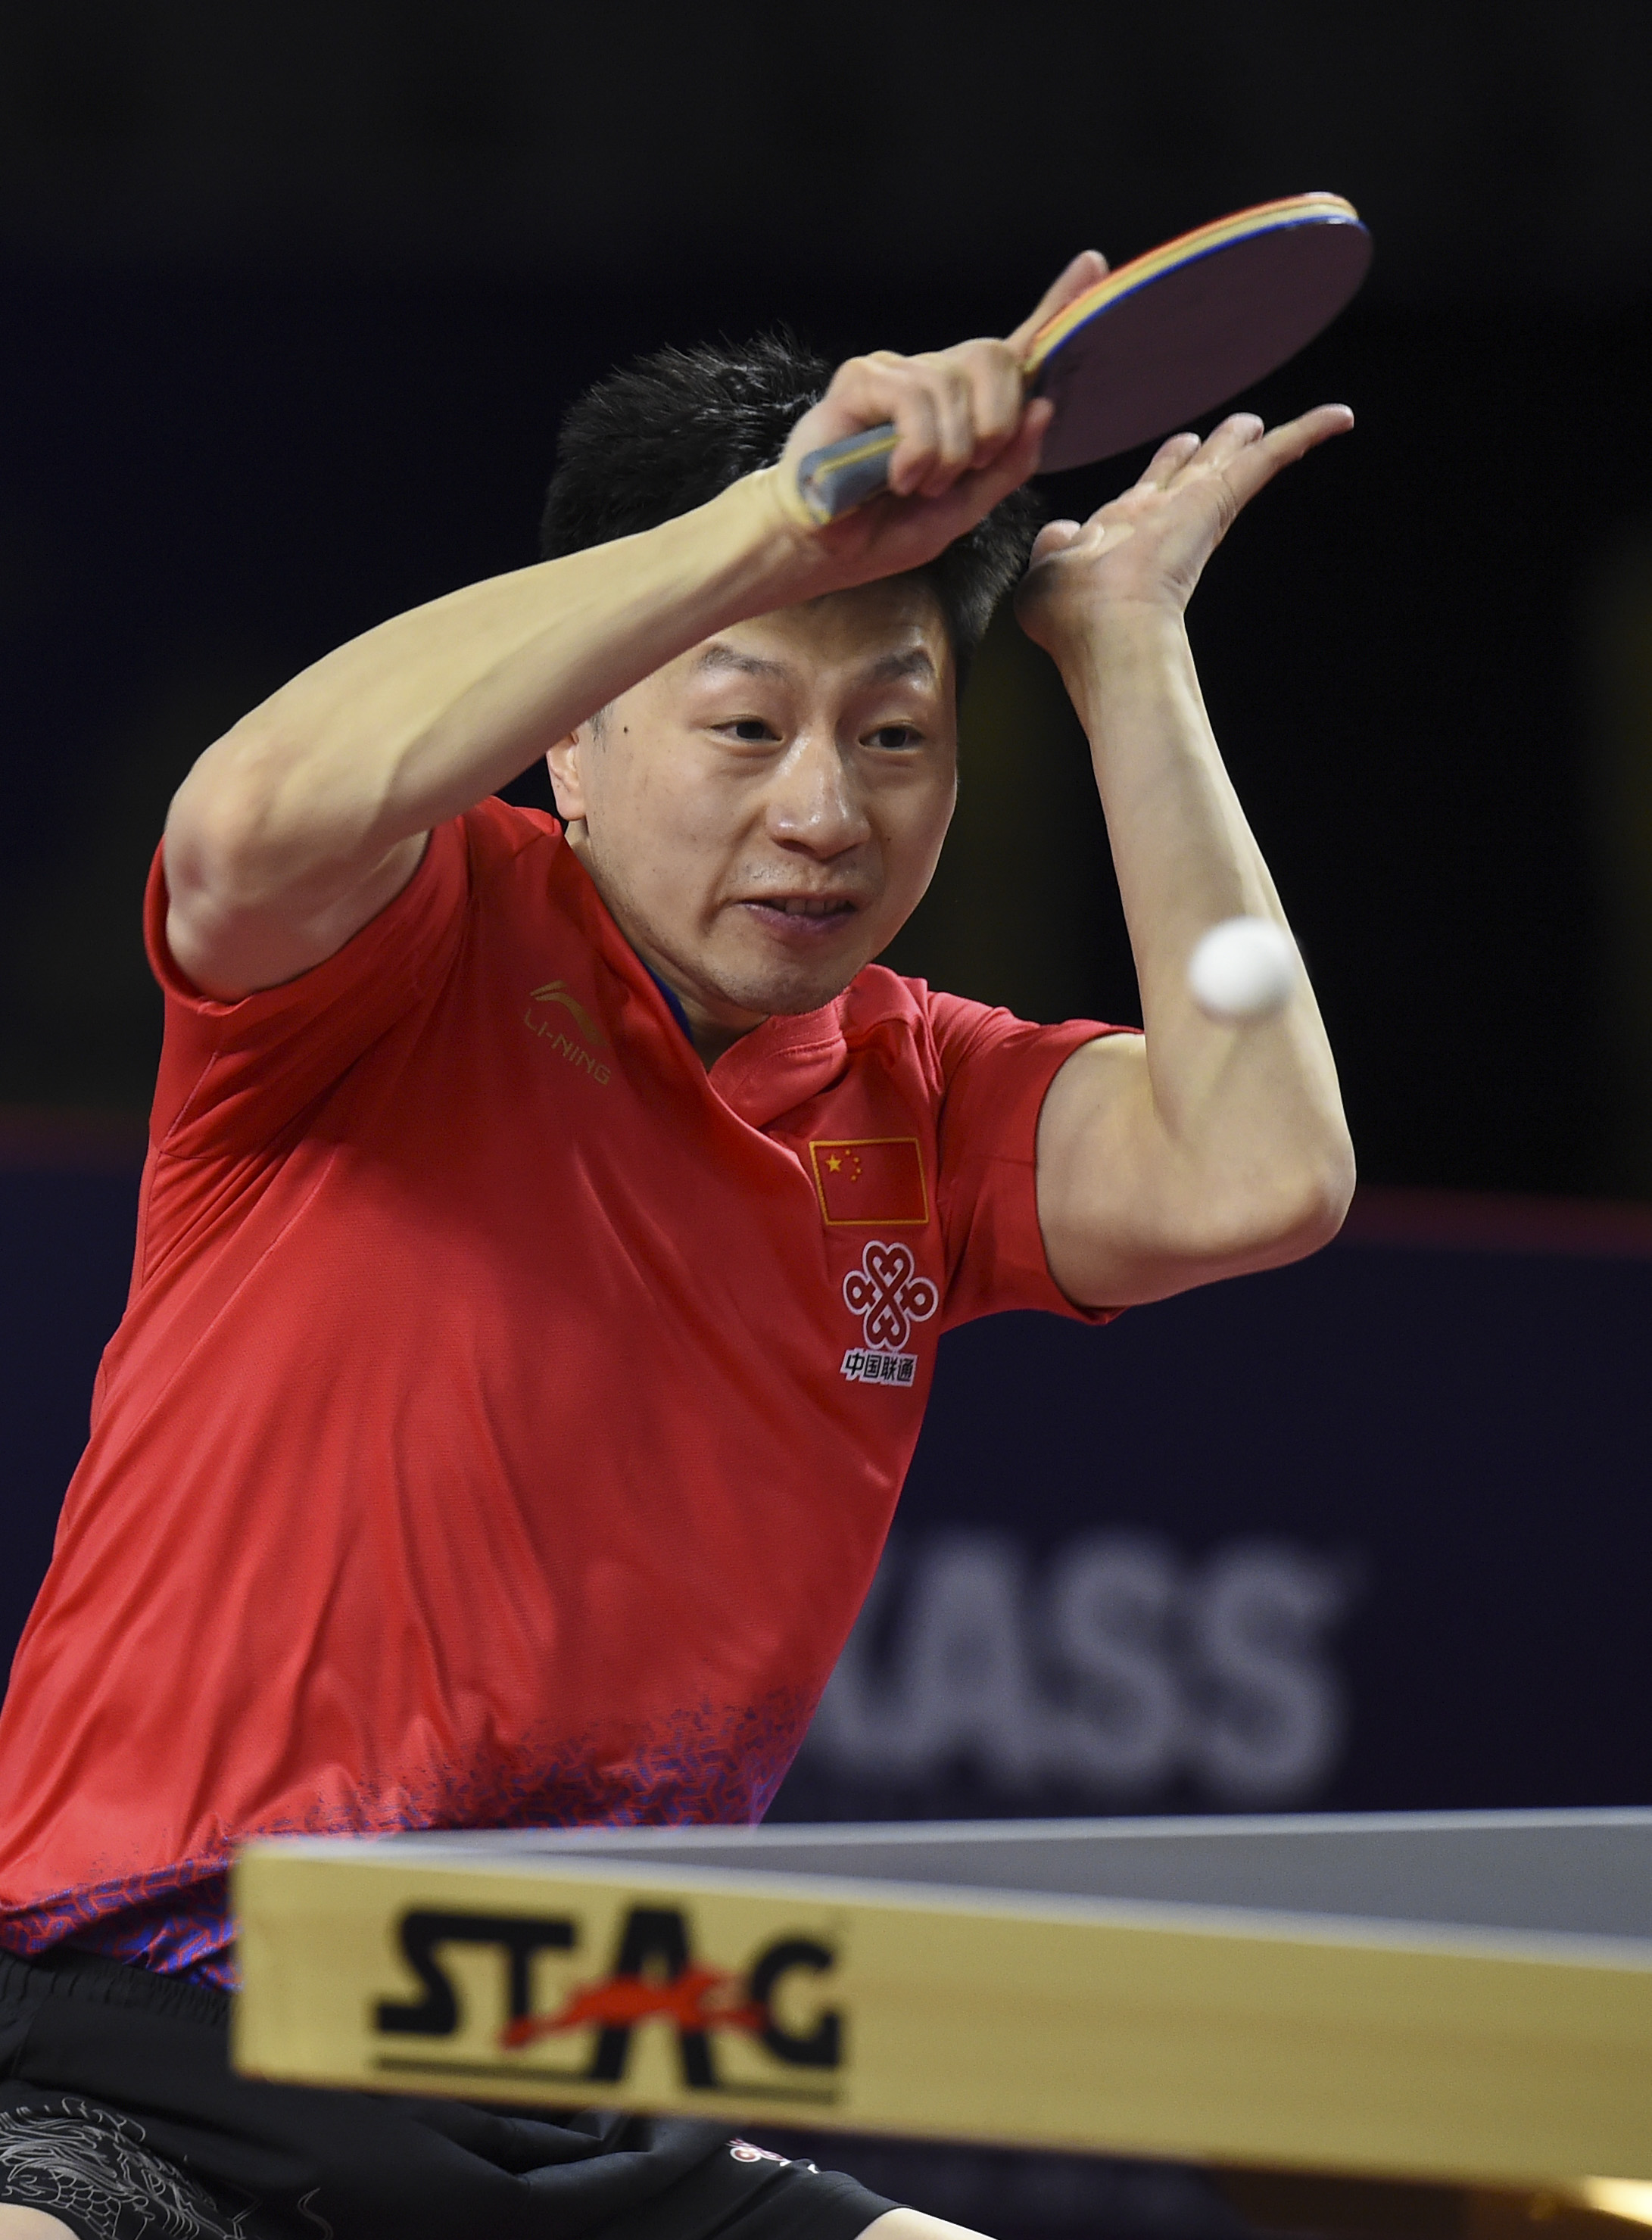 在2019年国际乒联世界巡回赛卡塔尔公开赛男单半决赛中,中国选手马龙